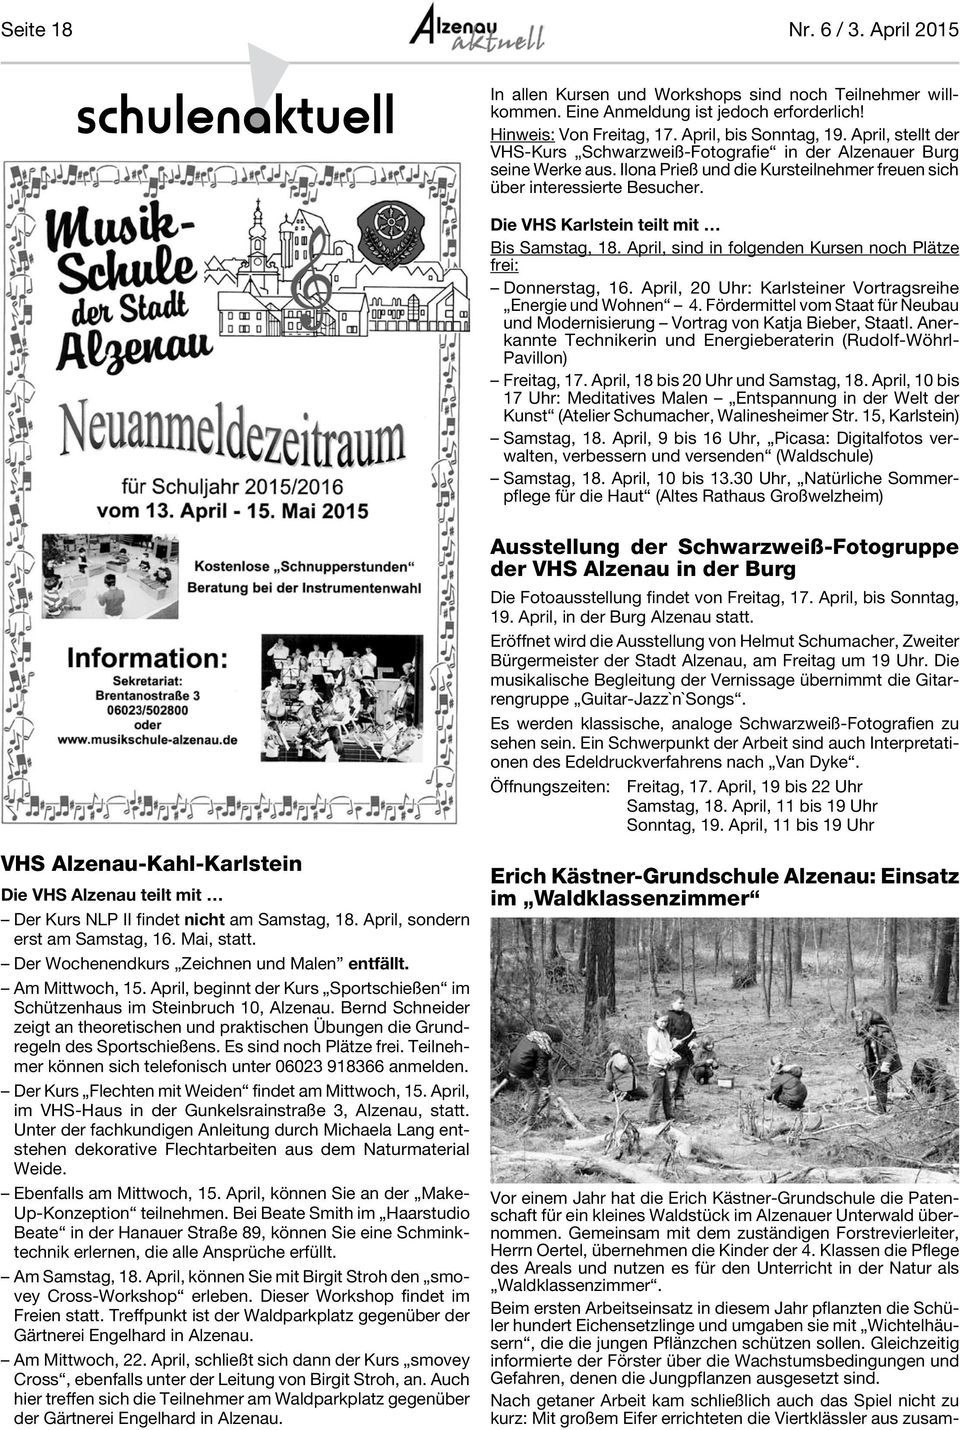 Die VHS Karlstein teilt mit Bis Samstag, 18. April, sind in folgenden Kursen noch Plätze frei: Donnerstag, 16. April, 20 Uhr: Karlsteiner Vortragsreihe Energie und Wohnen 4.